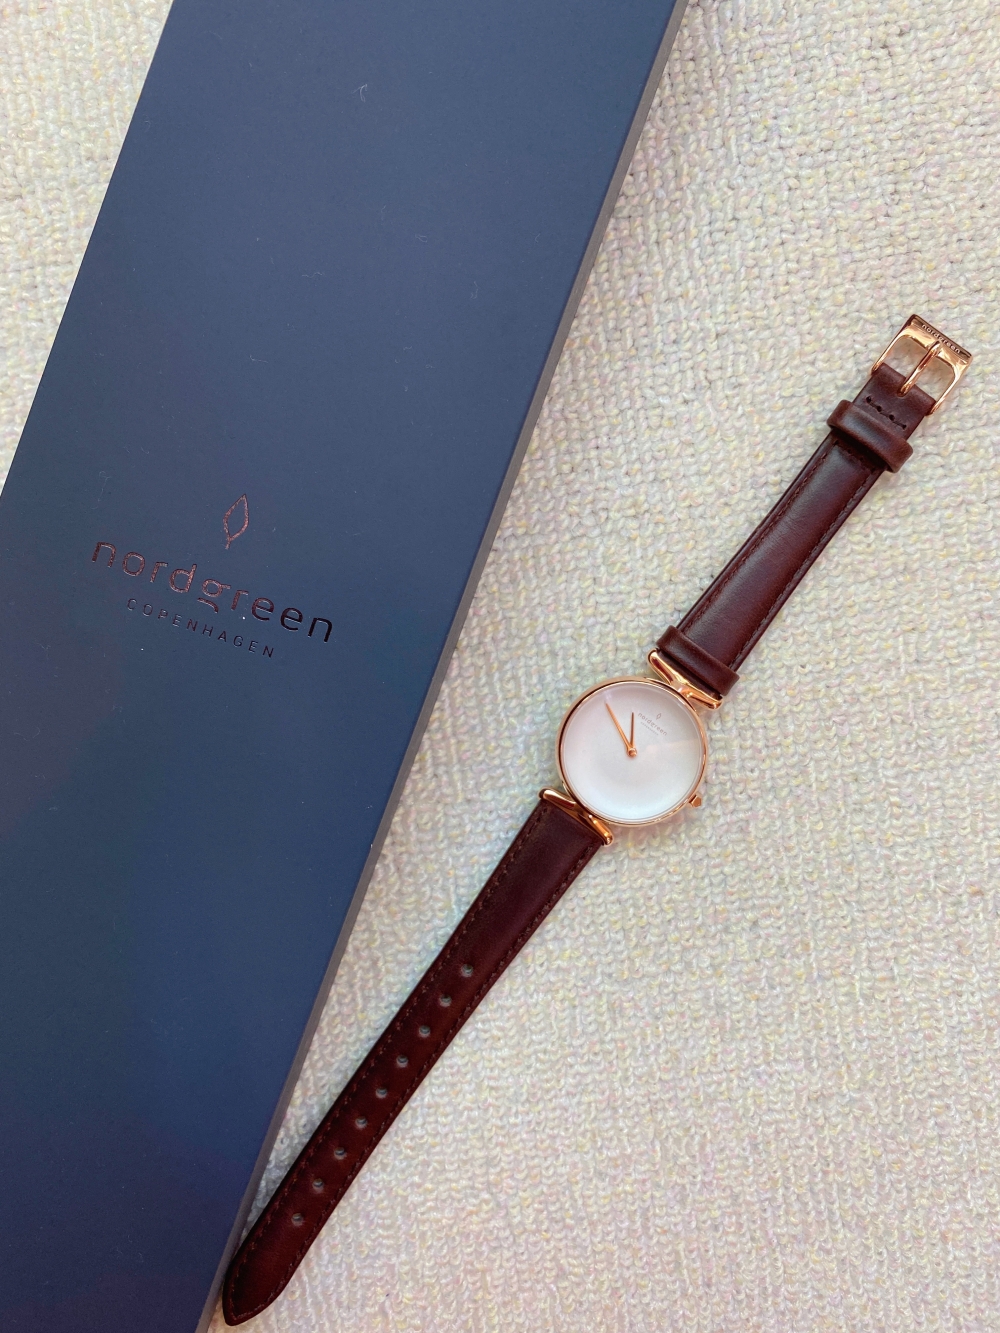 【穿搭】nordgreen丹麥設計文青錶款-The UNIKA 精緻優雅更上一層樓的氣質OL錶款